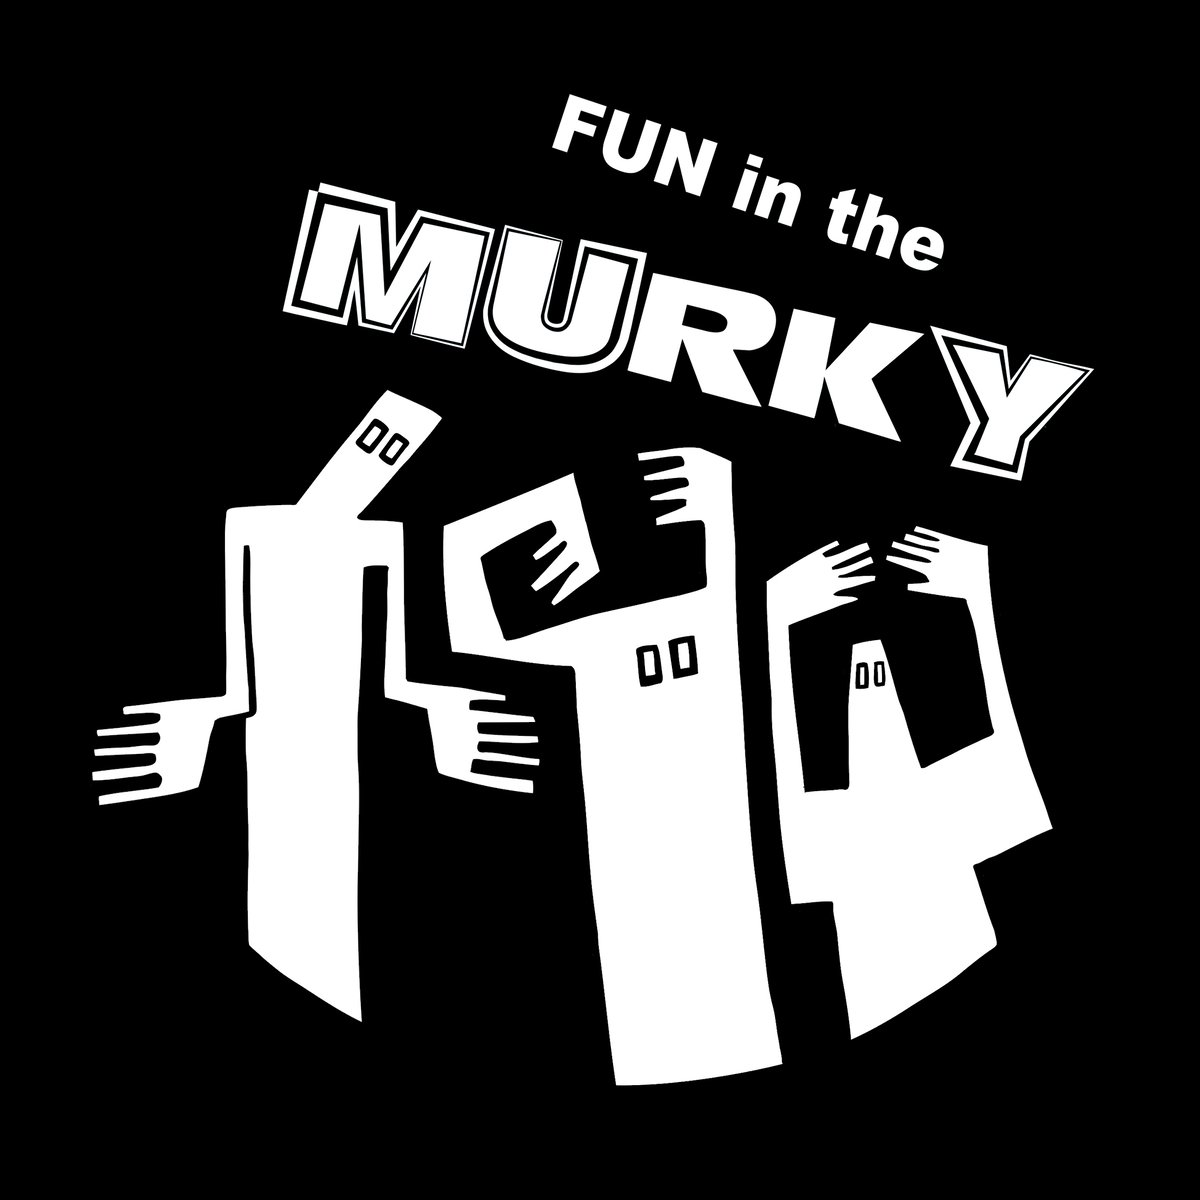 Fun in The Murky